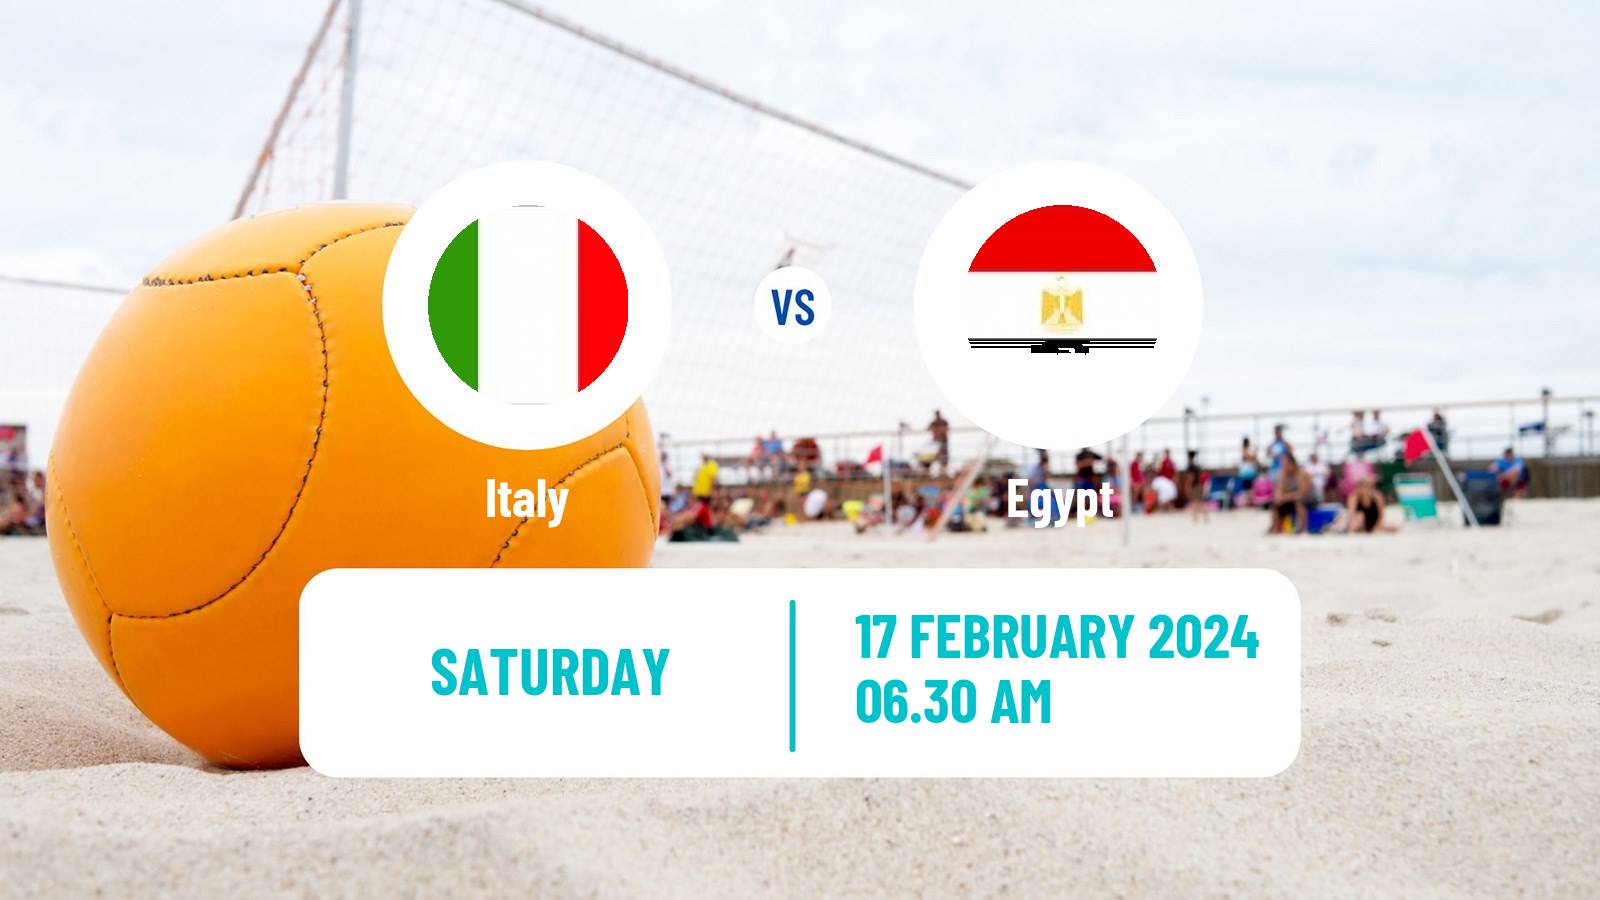 Beach soccer World Cup Italy - Egypt